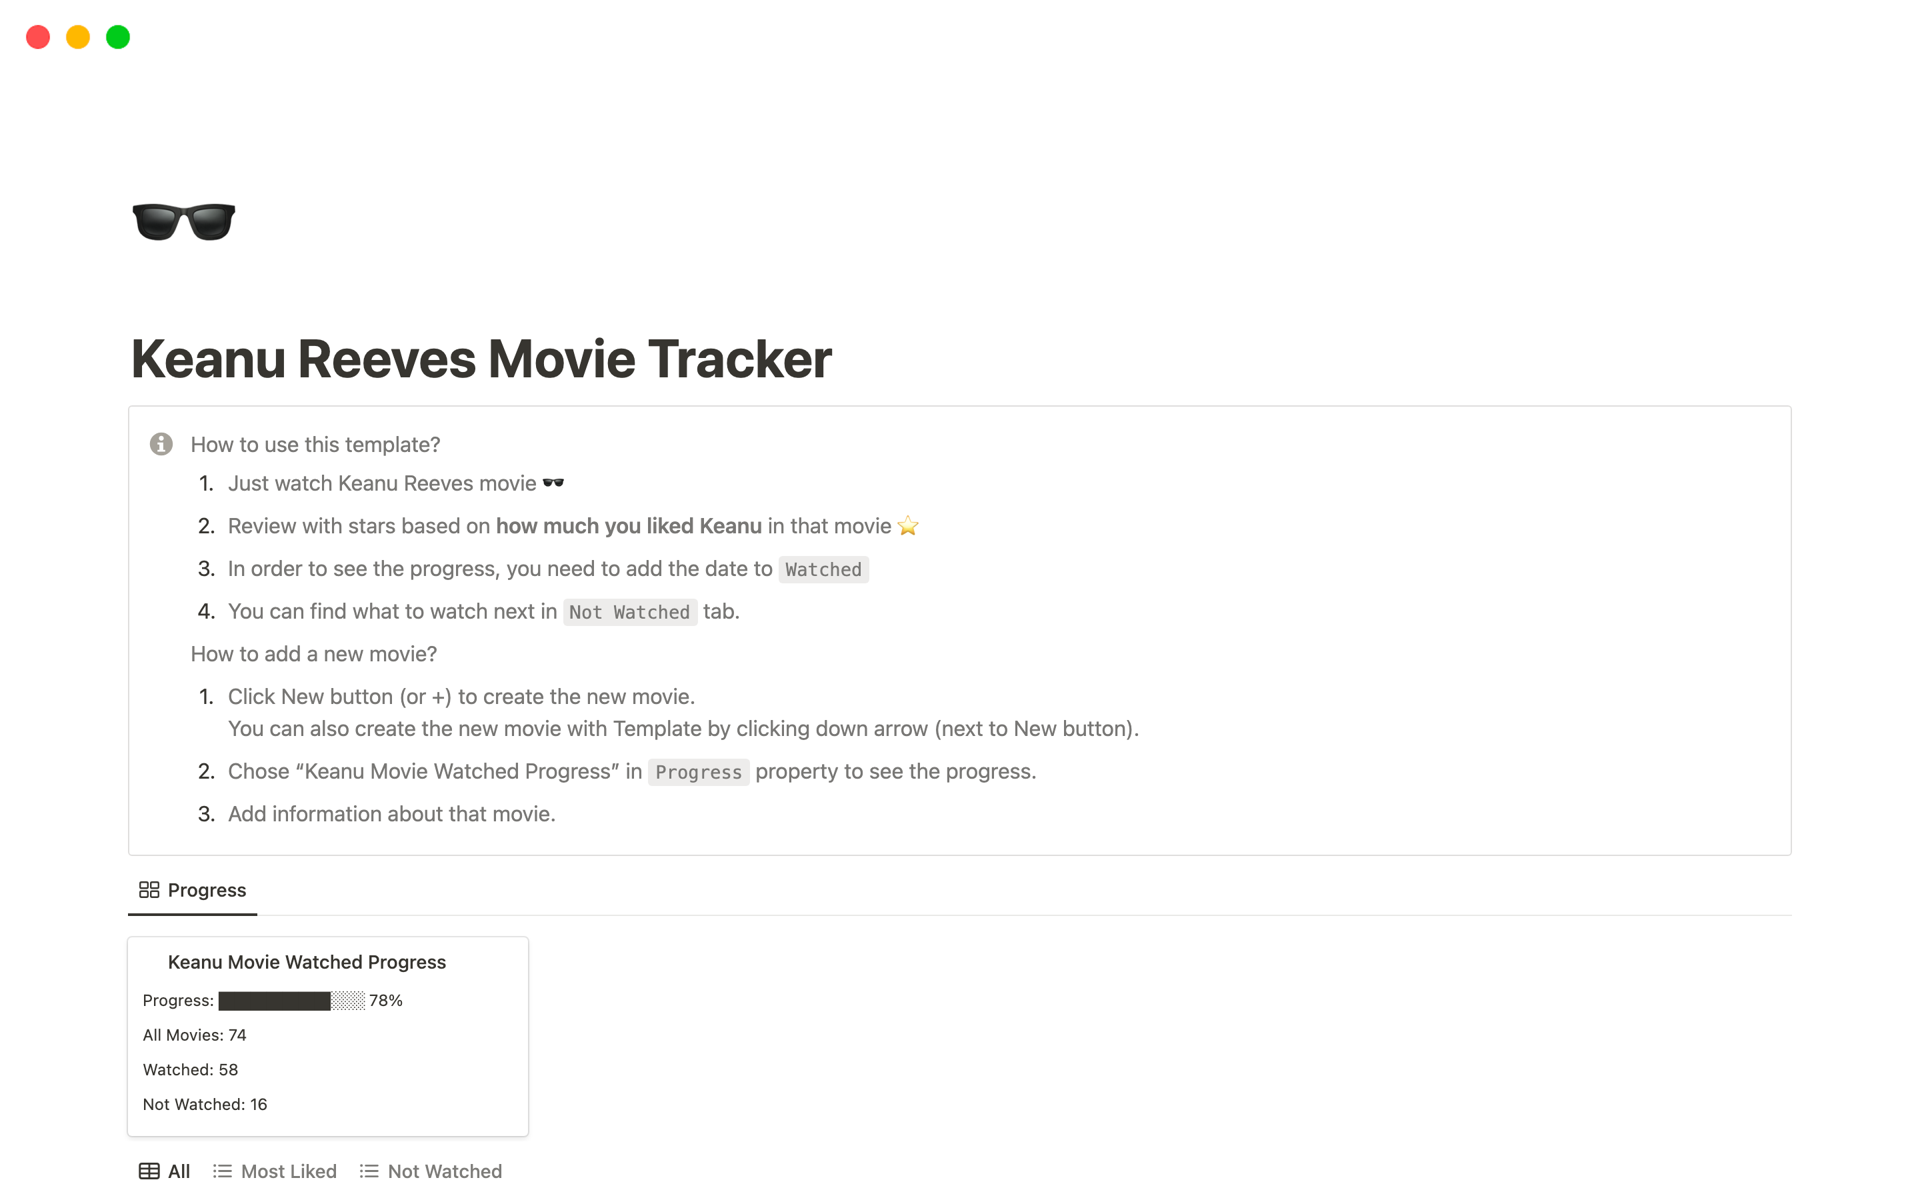 En förhandsgranskning av mallen för Keanu Reeves Movie Tracker